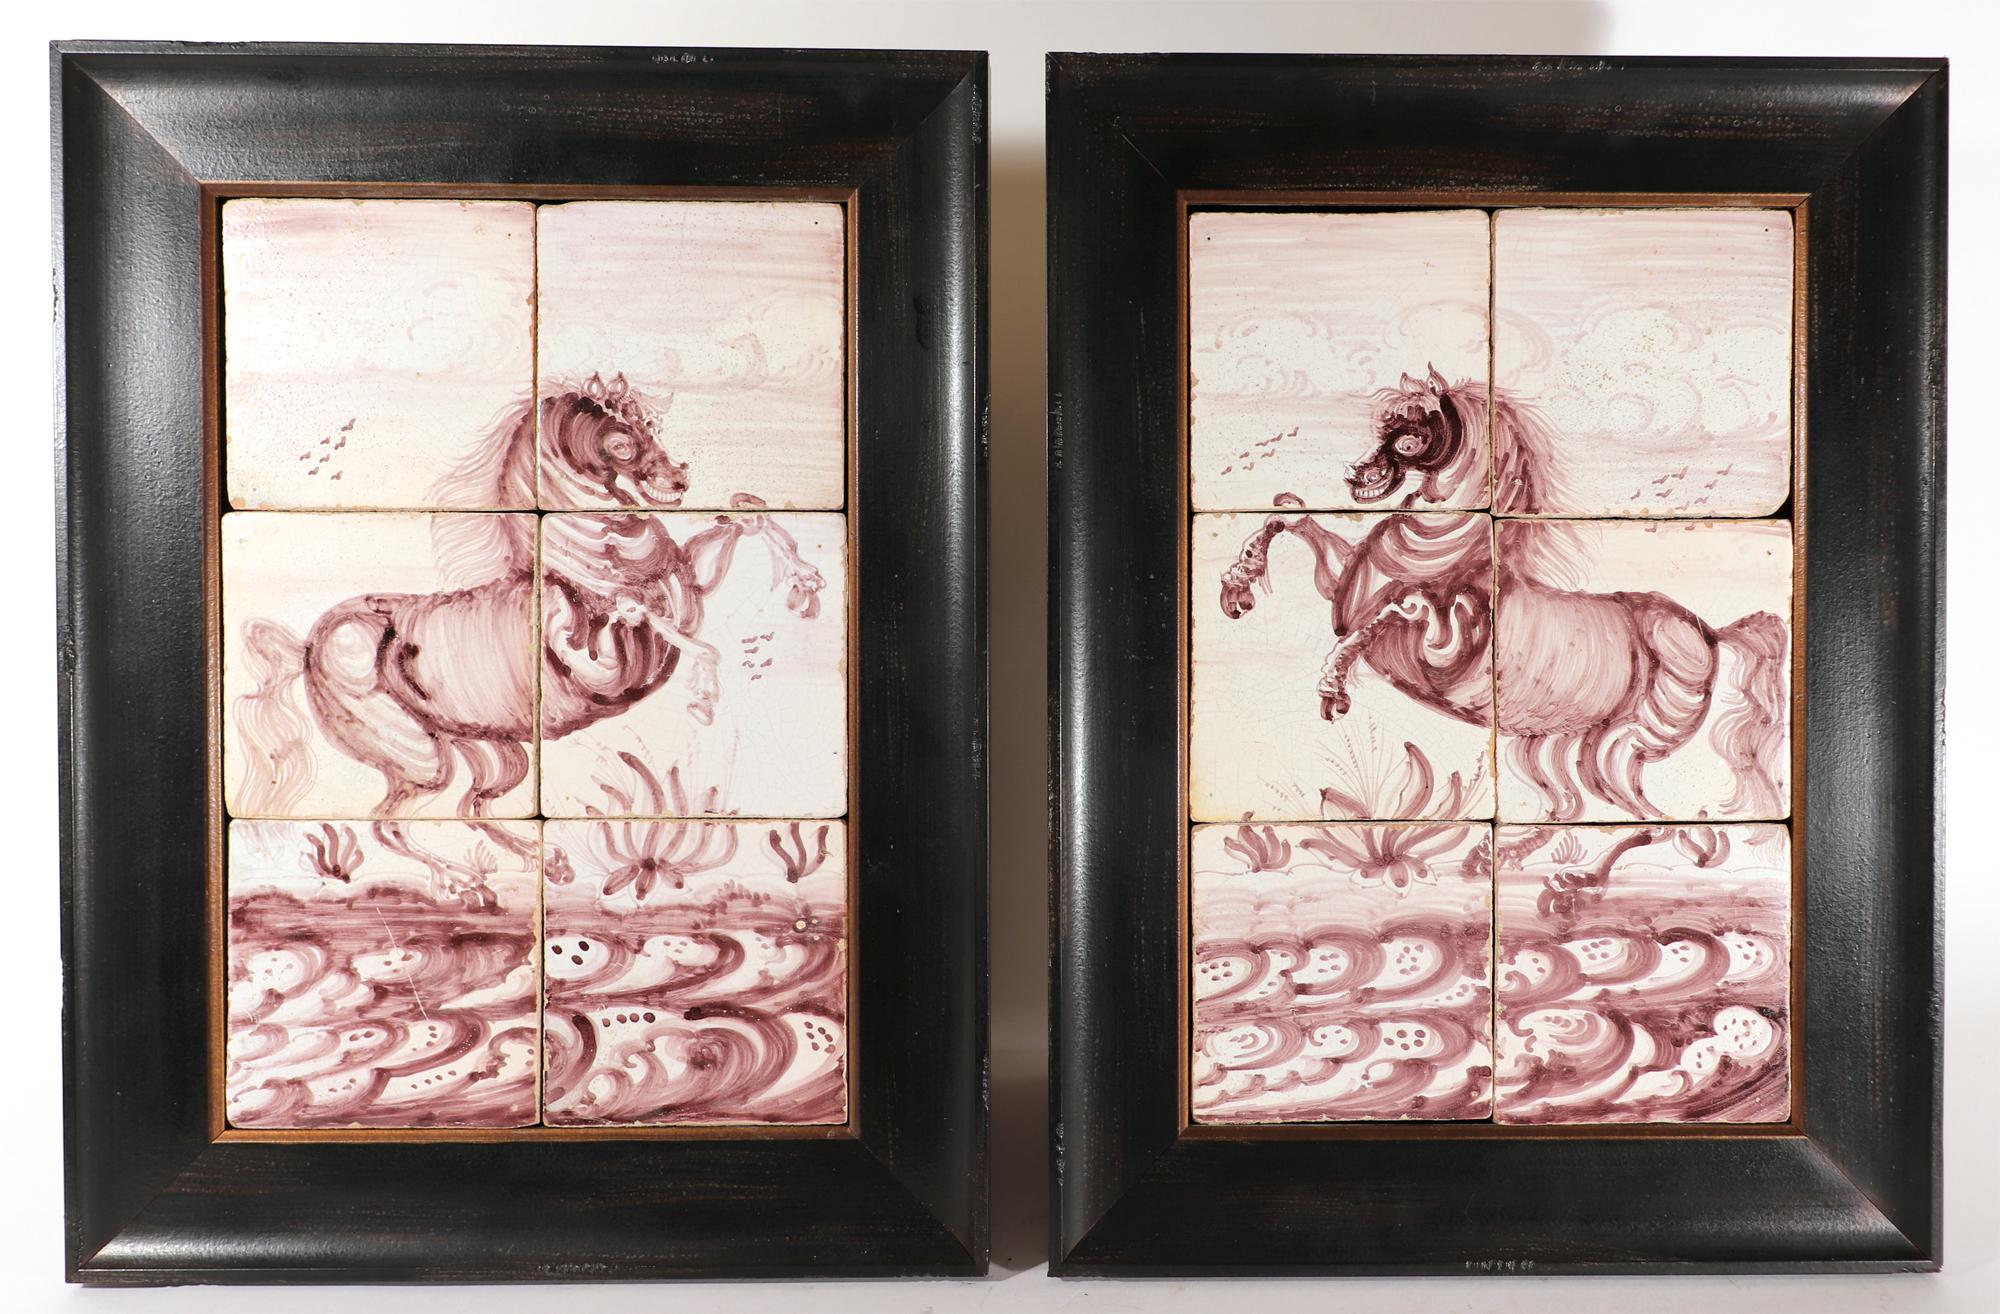 Niederländische Delft-Mangankacheln aus dem 18. Jahrhundert Bilder von Pferdeaufzucht,
Rotterdam,
CIRCA 1780

Die beiden gerahmten Manganbilder mit sechs Kacheln zeigen jeweils ein Pferd, das sich aufbäumt, während sie sich gegenüberstehen. Sie